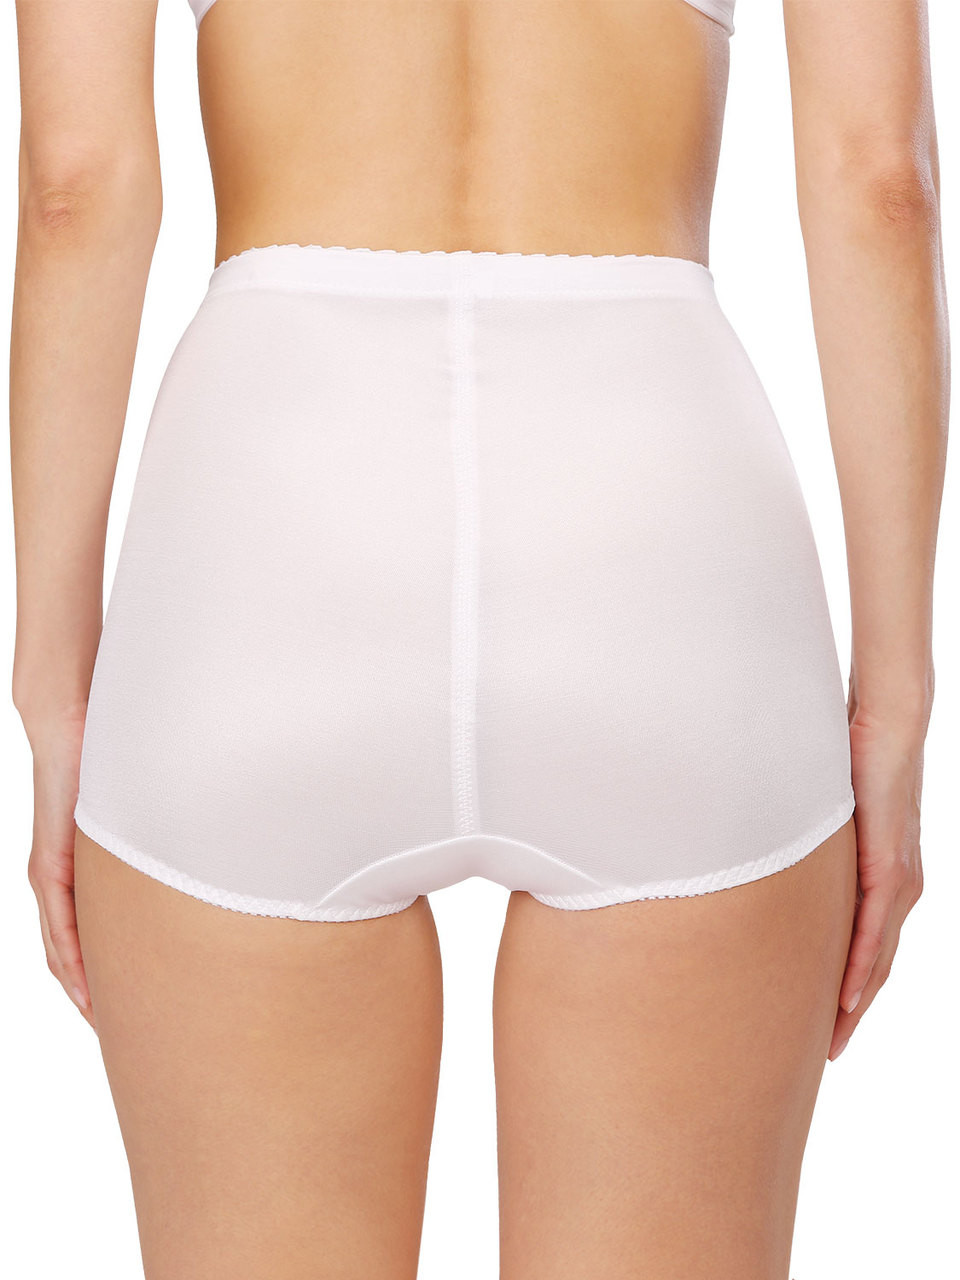 Figure-shaping panty girdle Iga Weiss Large sizes XL-9XL